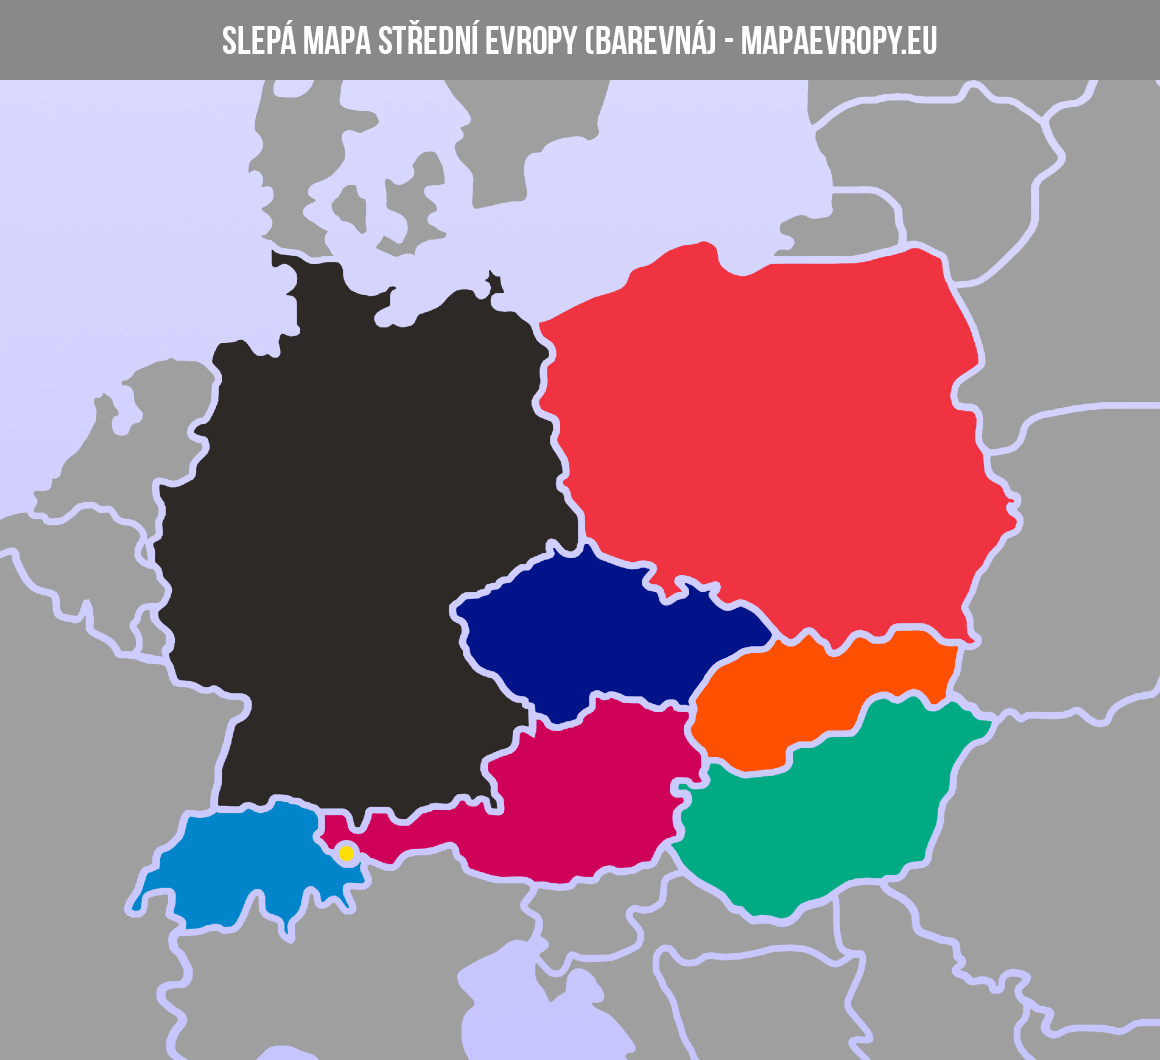 Slepá mapa střední Evropy